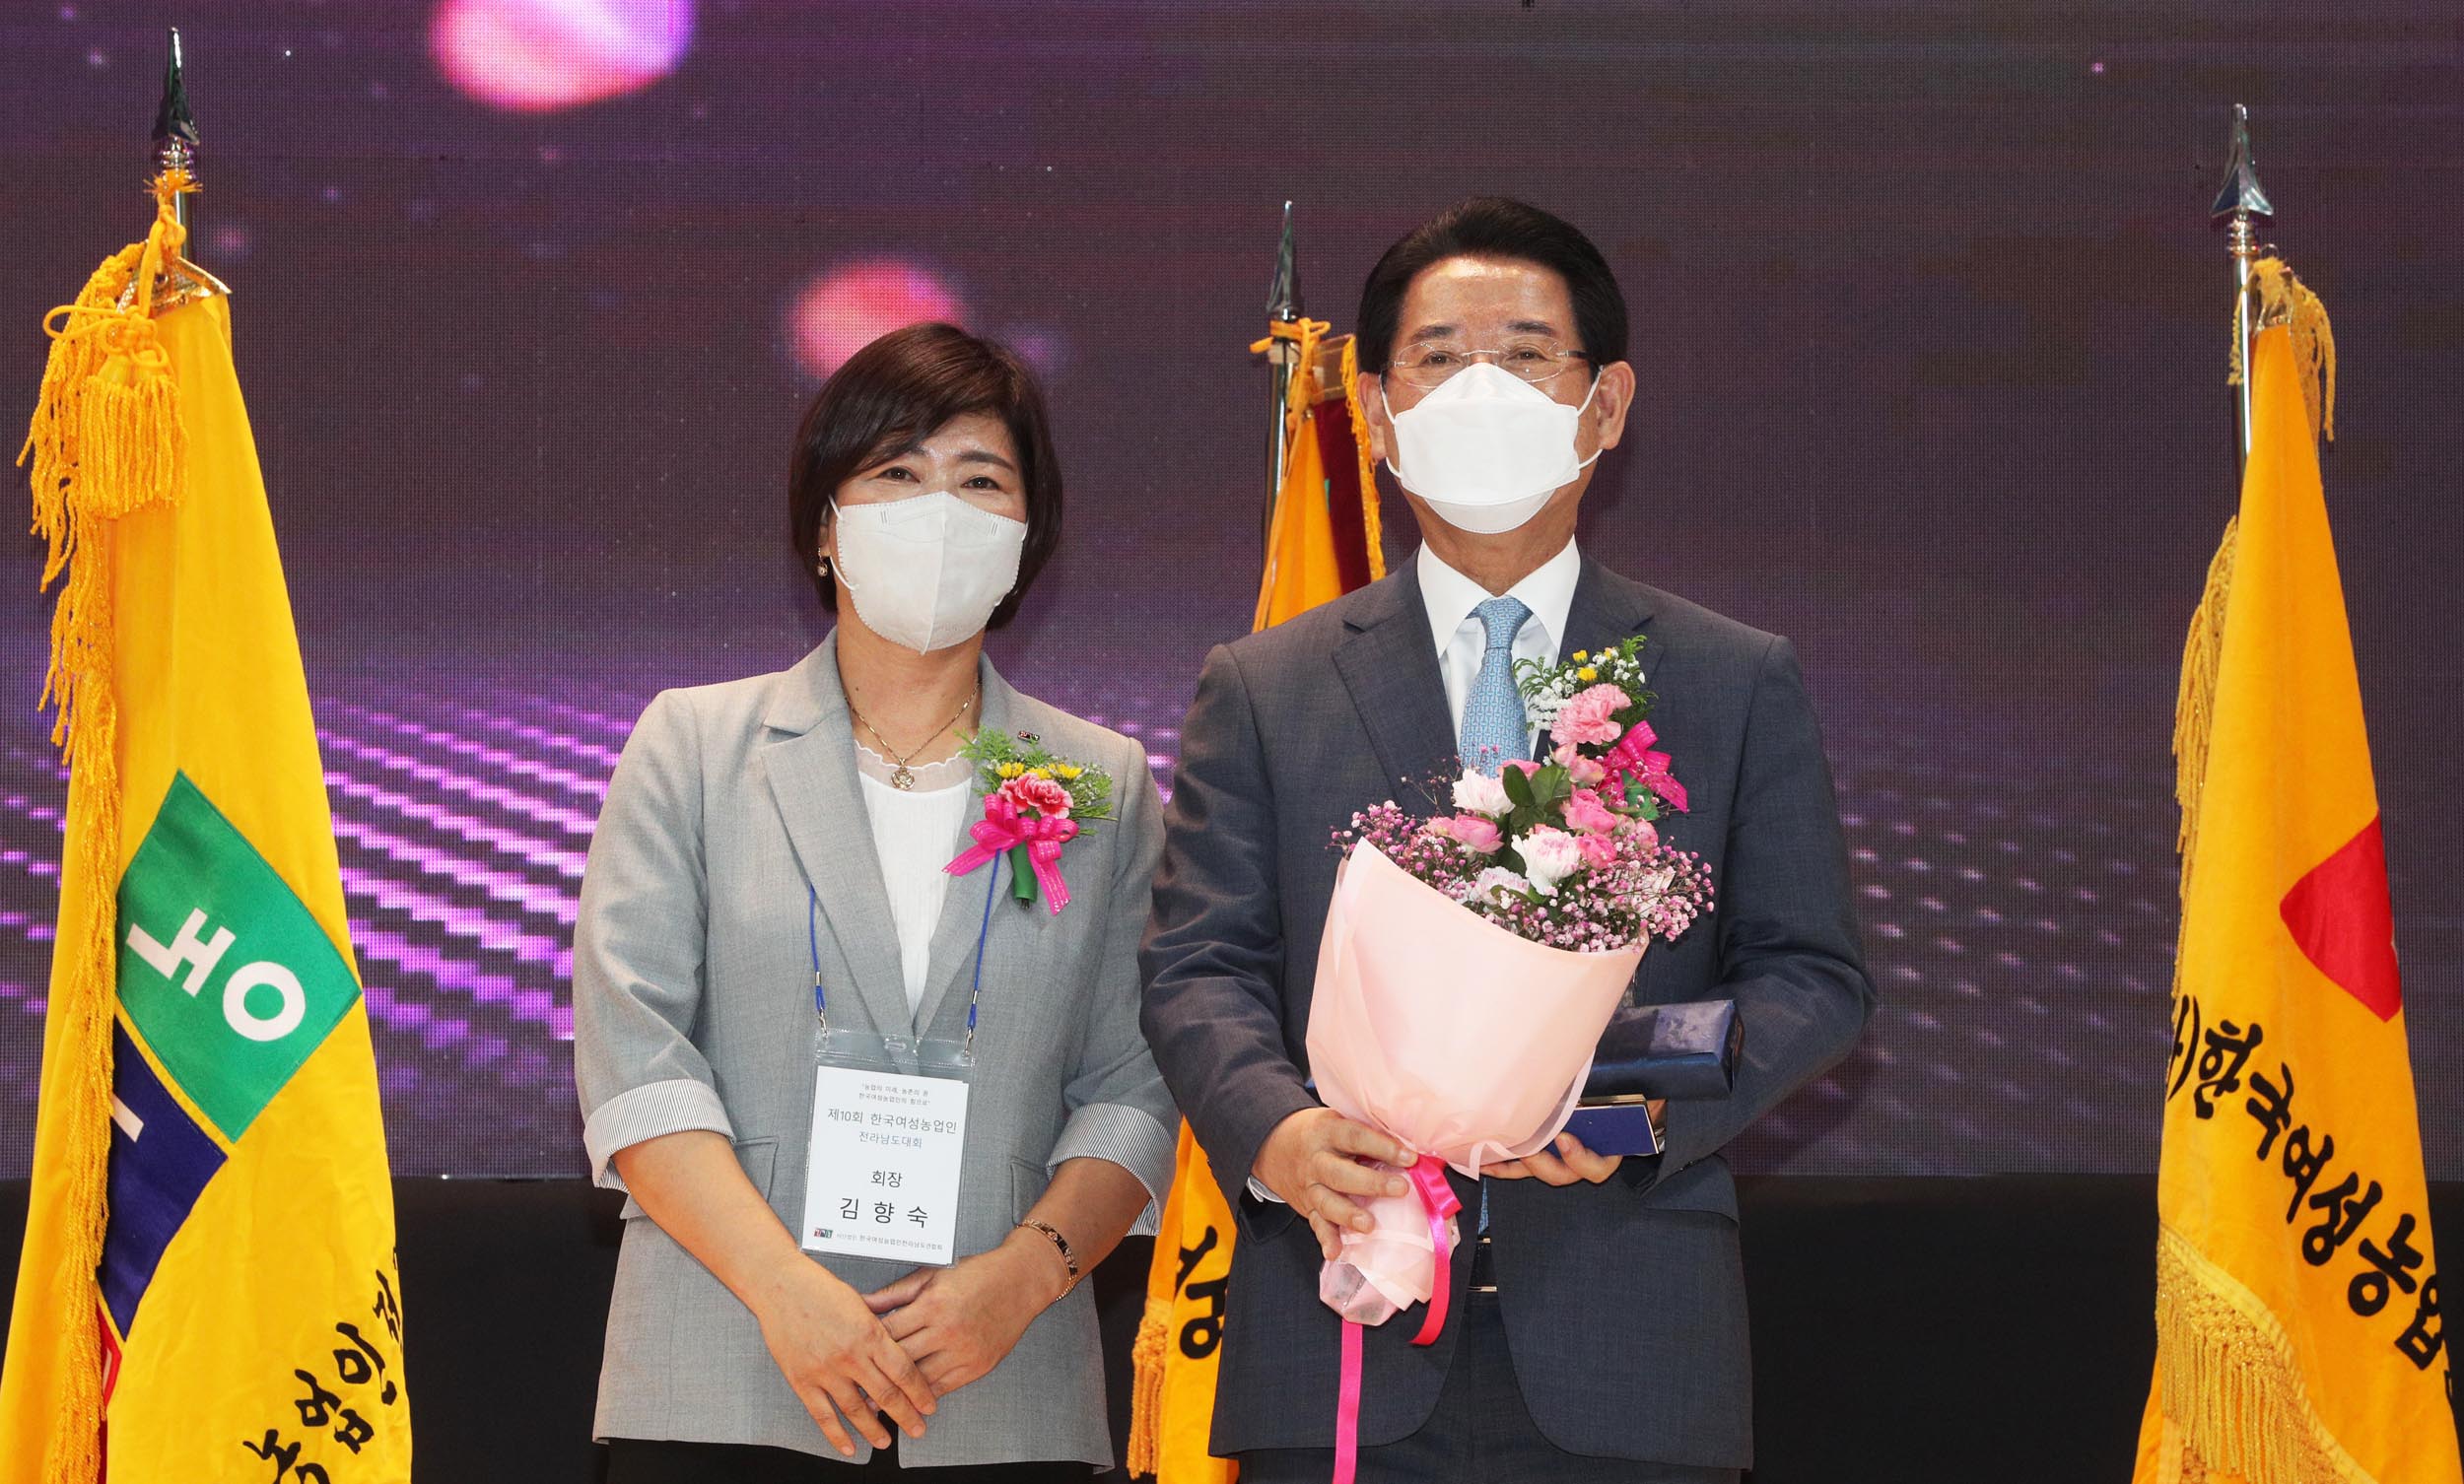 제10회 한국여성농업인 전라남도 대회1